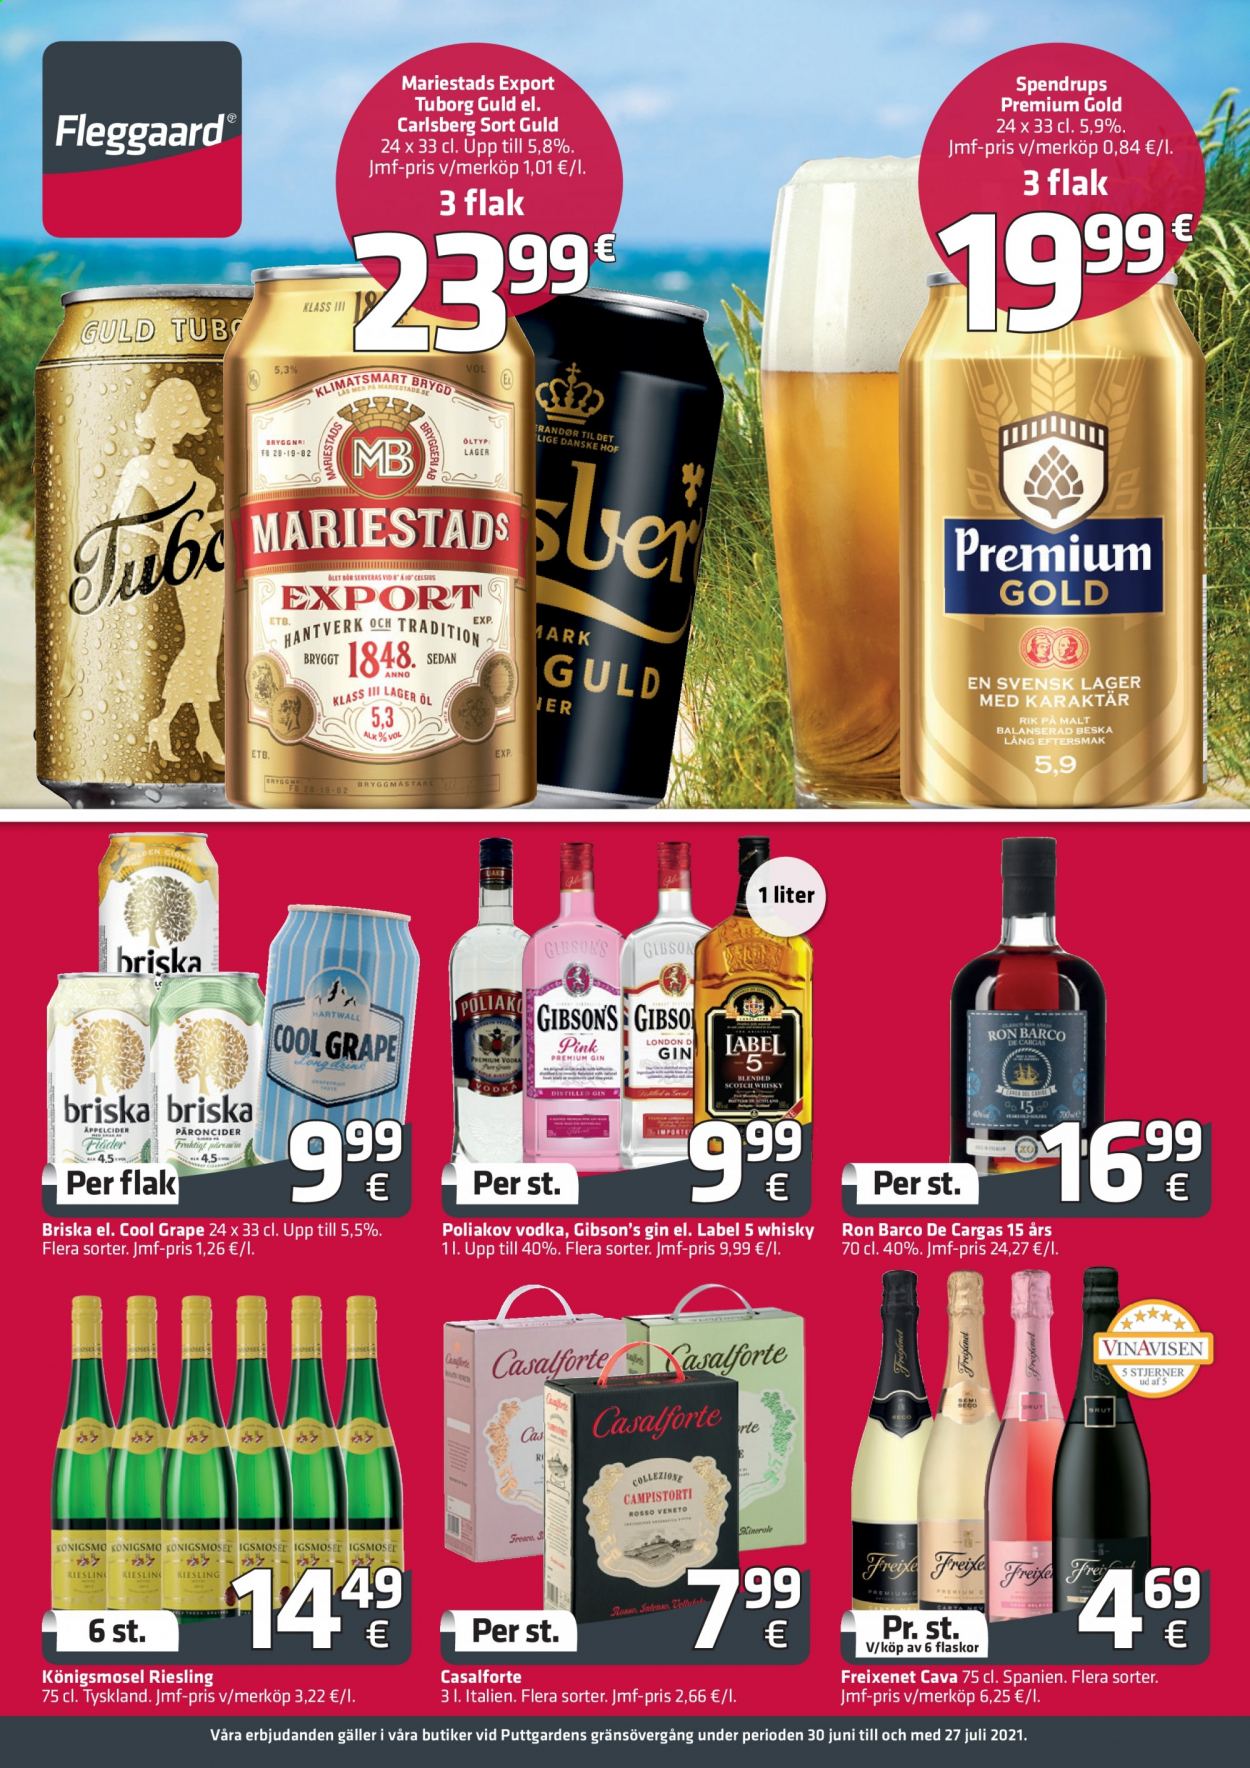 thumbnail - Fleggaard reklamblad - 30/6 2021 - 27/7 2021 - varor från reklamblad - Carlsberg, mariestads, Tuborg, Cava, Freixenet, Riesling, whisky, Briska, Cool Grape, Vodka, gin. Sida 1.